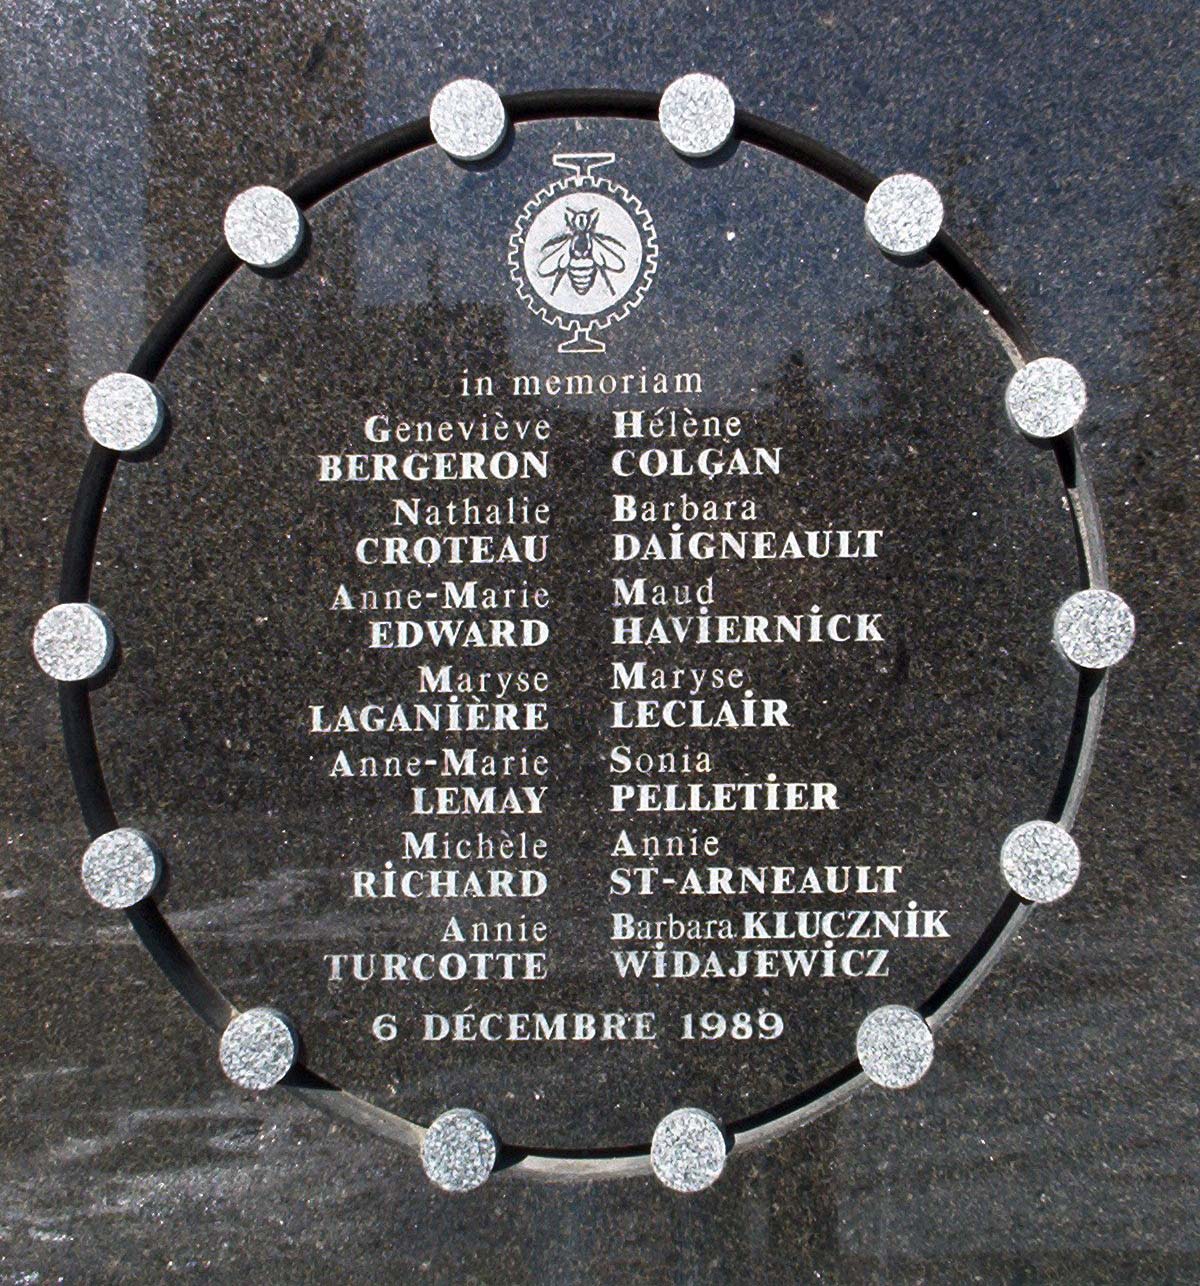 Plaque at École Polytechnique commemorating victims of the massacre